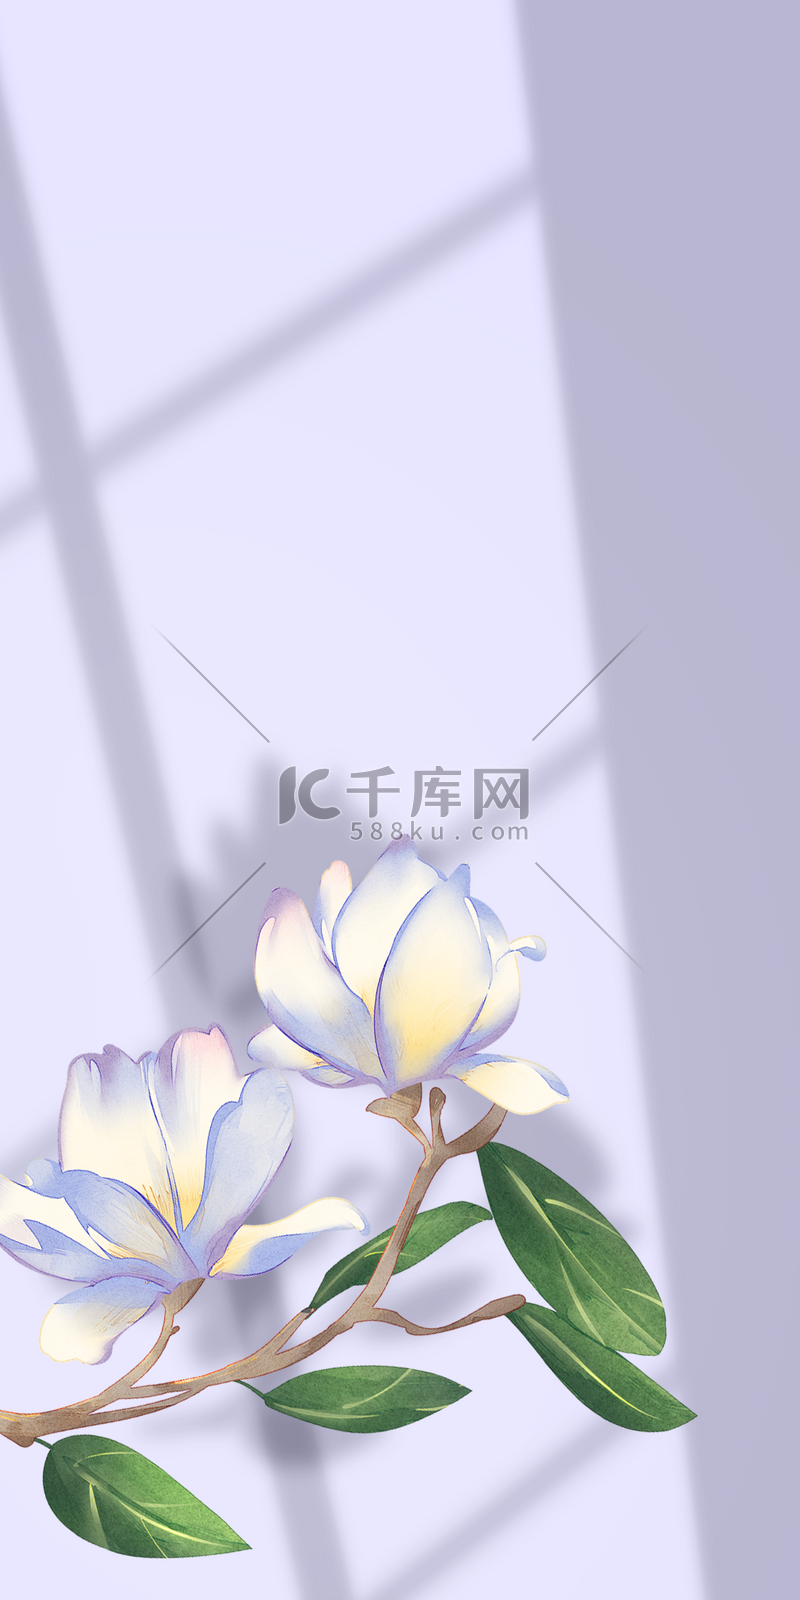 花卉与阴影白色花朵叶片背景